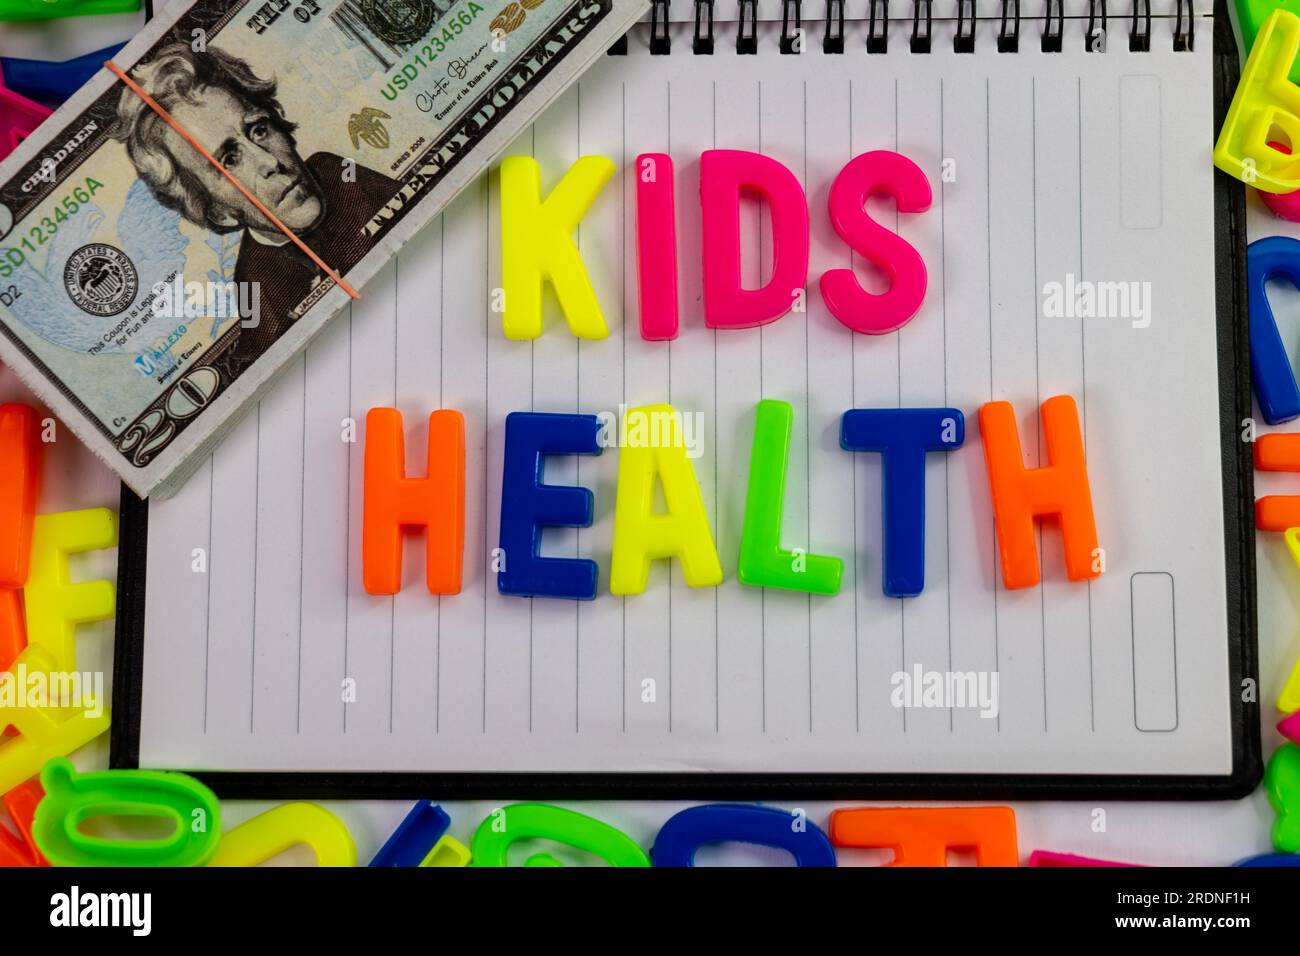 Eine Nahaufnahme von bunten Buchstabenmagneten, die die Gesundheit von Kindern auf einem einfachen Stück Milchprodukte erklären, mit einem Stapel Bargeld oben drauf. Stockfoto